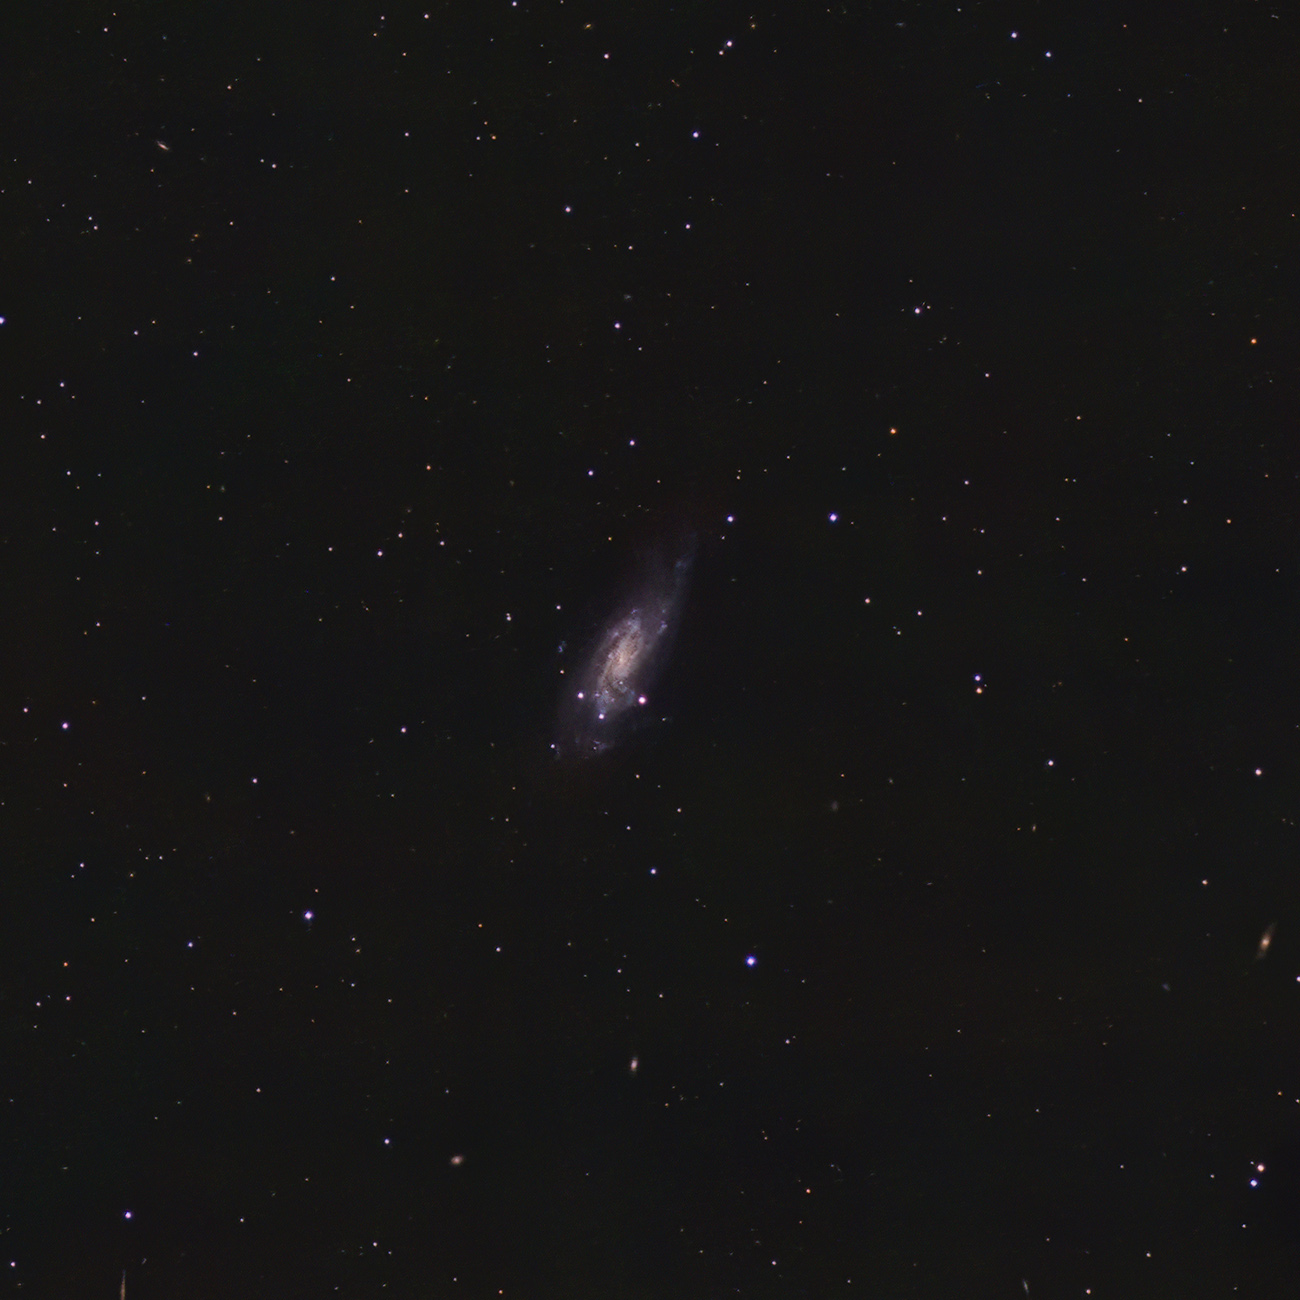 NGC 4559 in Erlangen NGC 4559